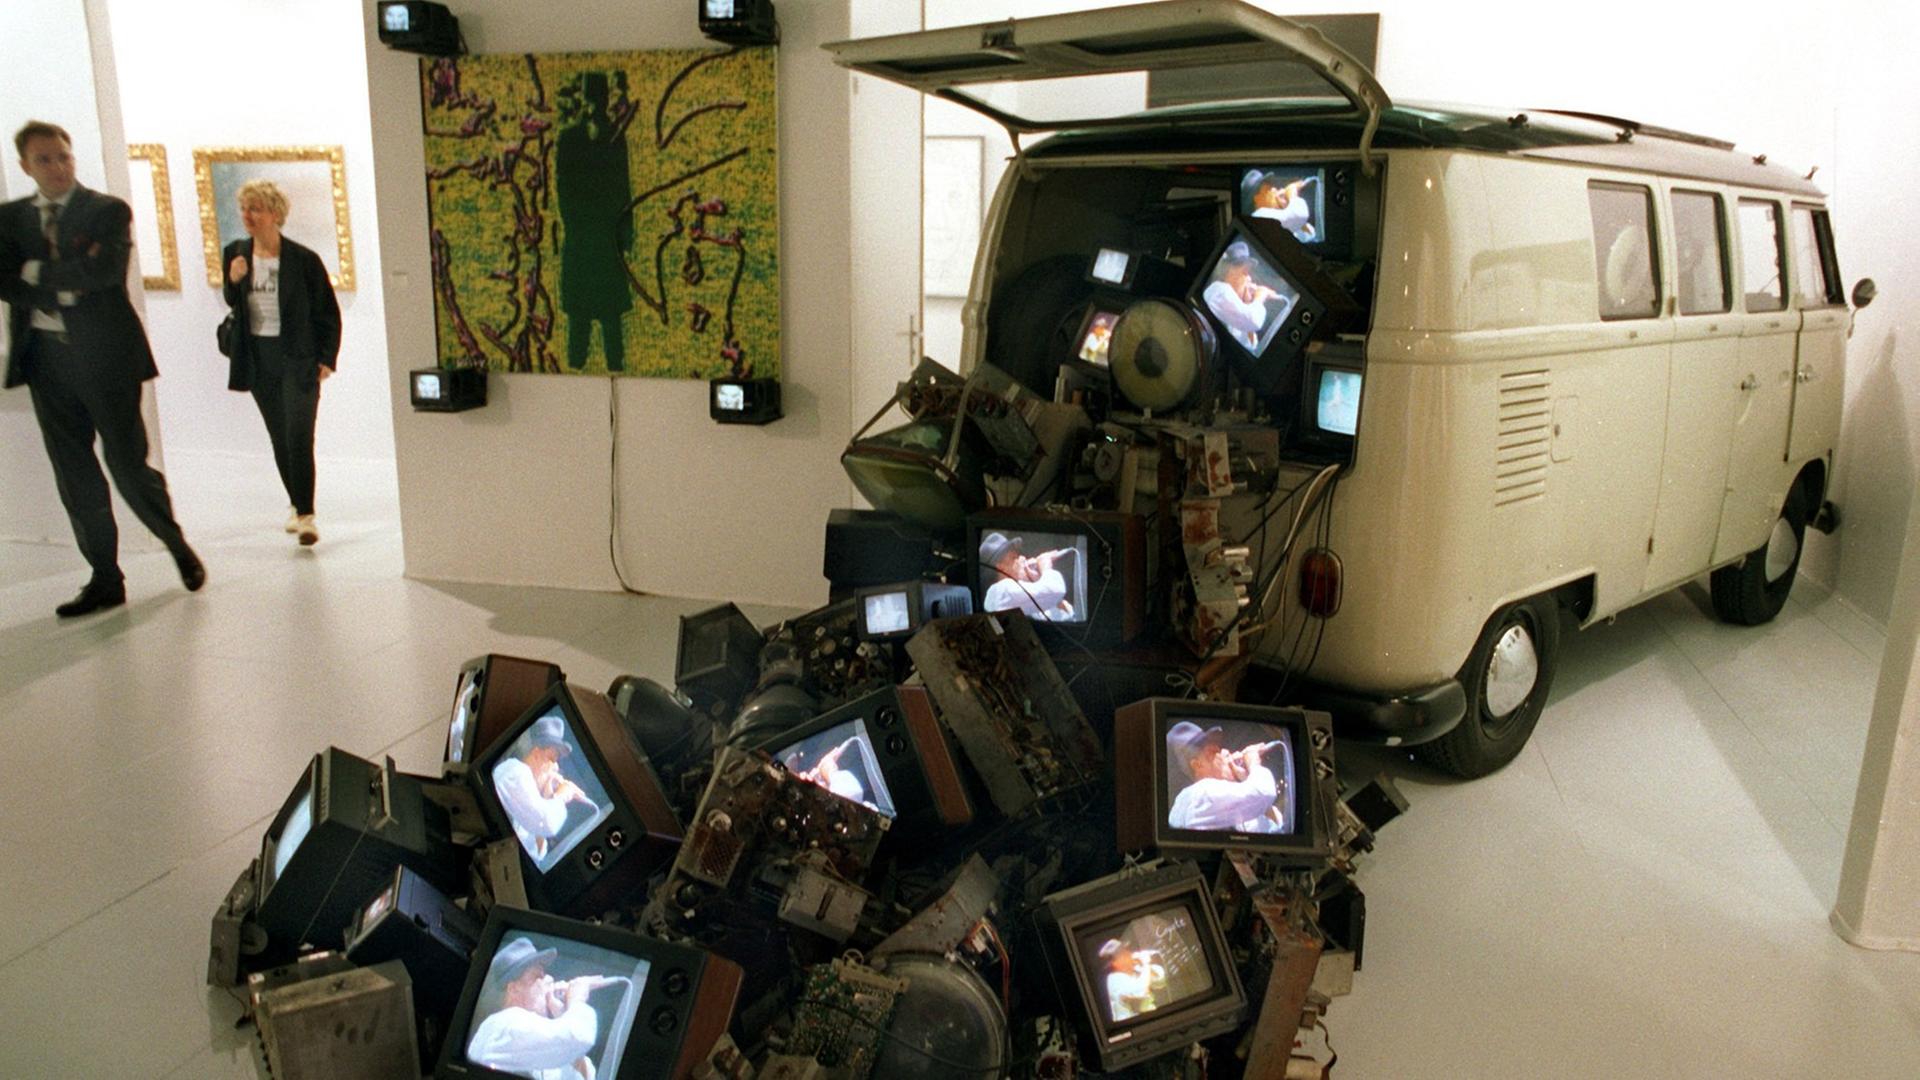 Die Installation "Beuys car" des koreanischen Künstlers Nam June Paik auf der Internationalen Kunstmesse "Art 26" in Basel 1995